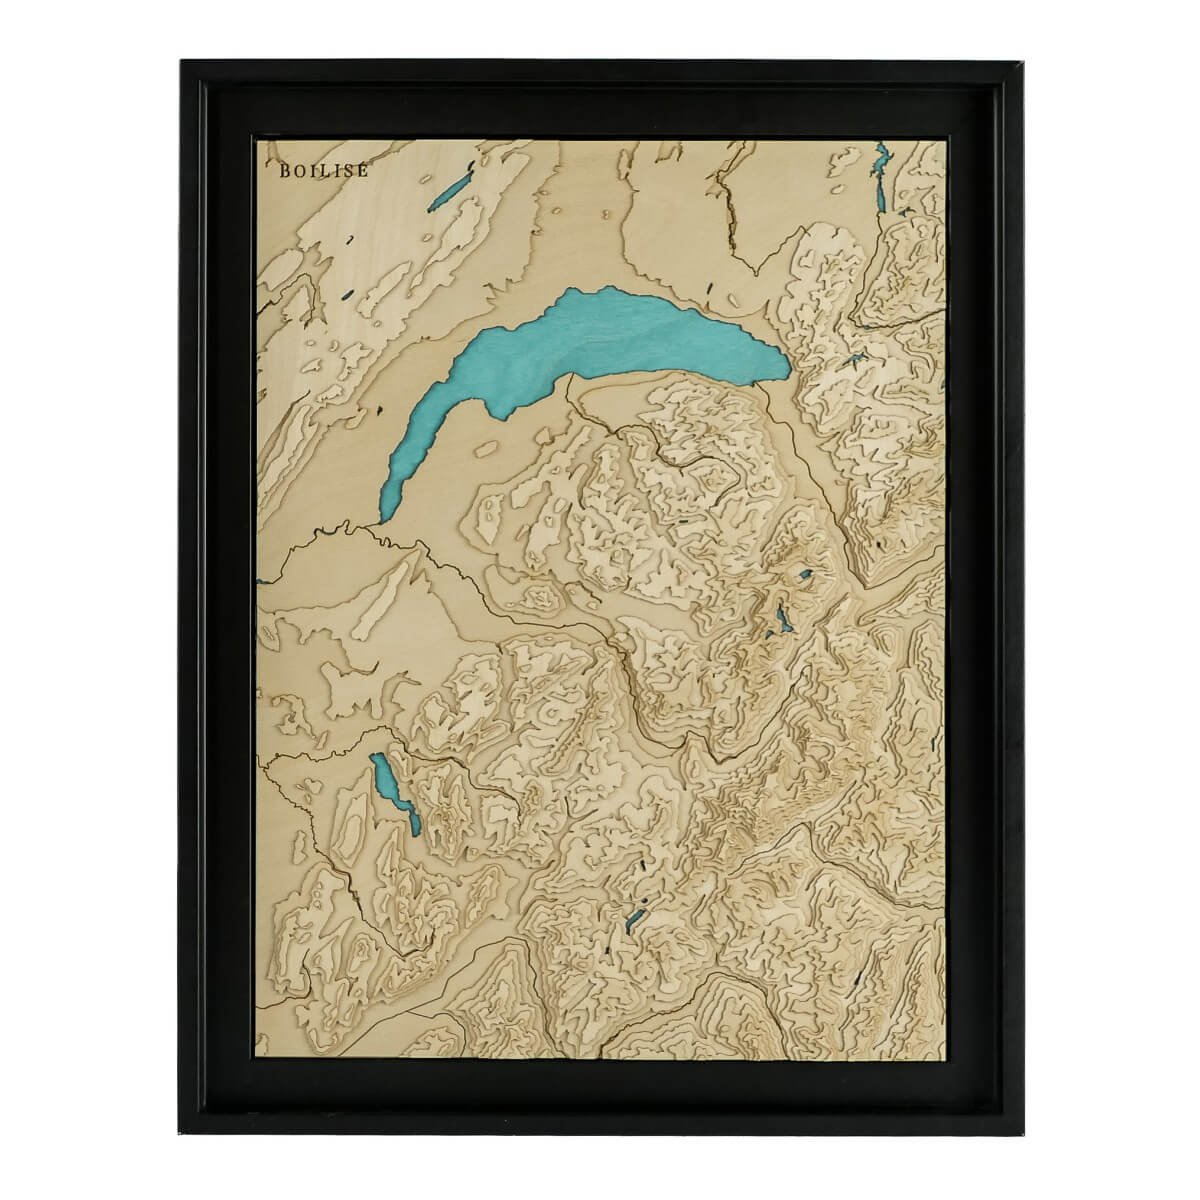 Le lac Léman et la Savoie en relief encadré dans une caisse américaine noire